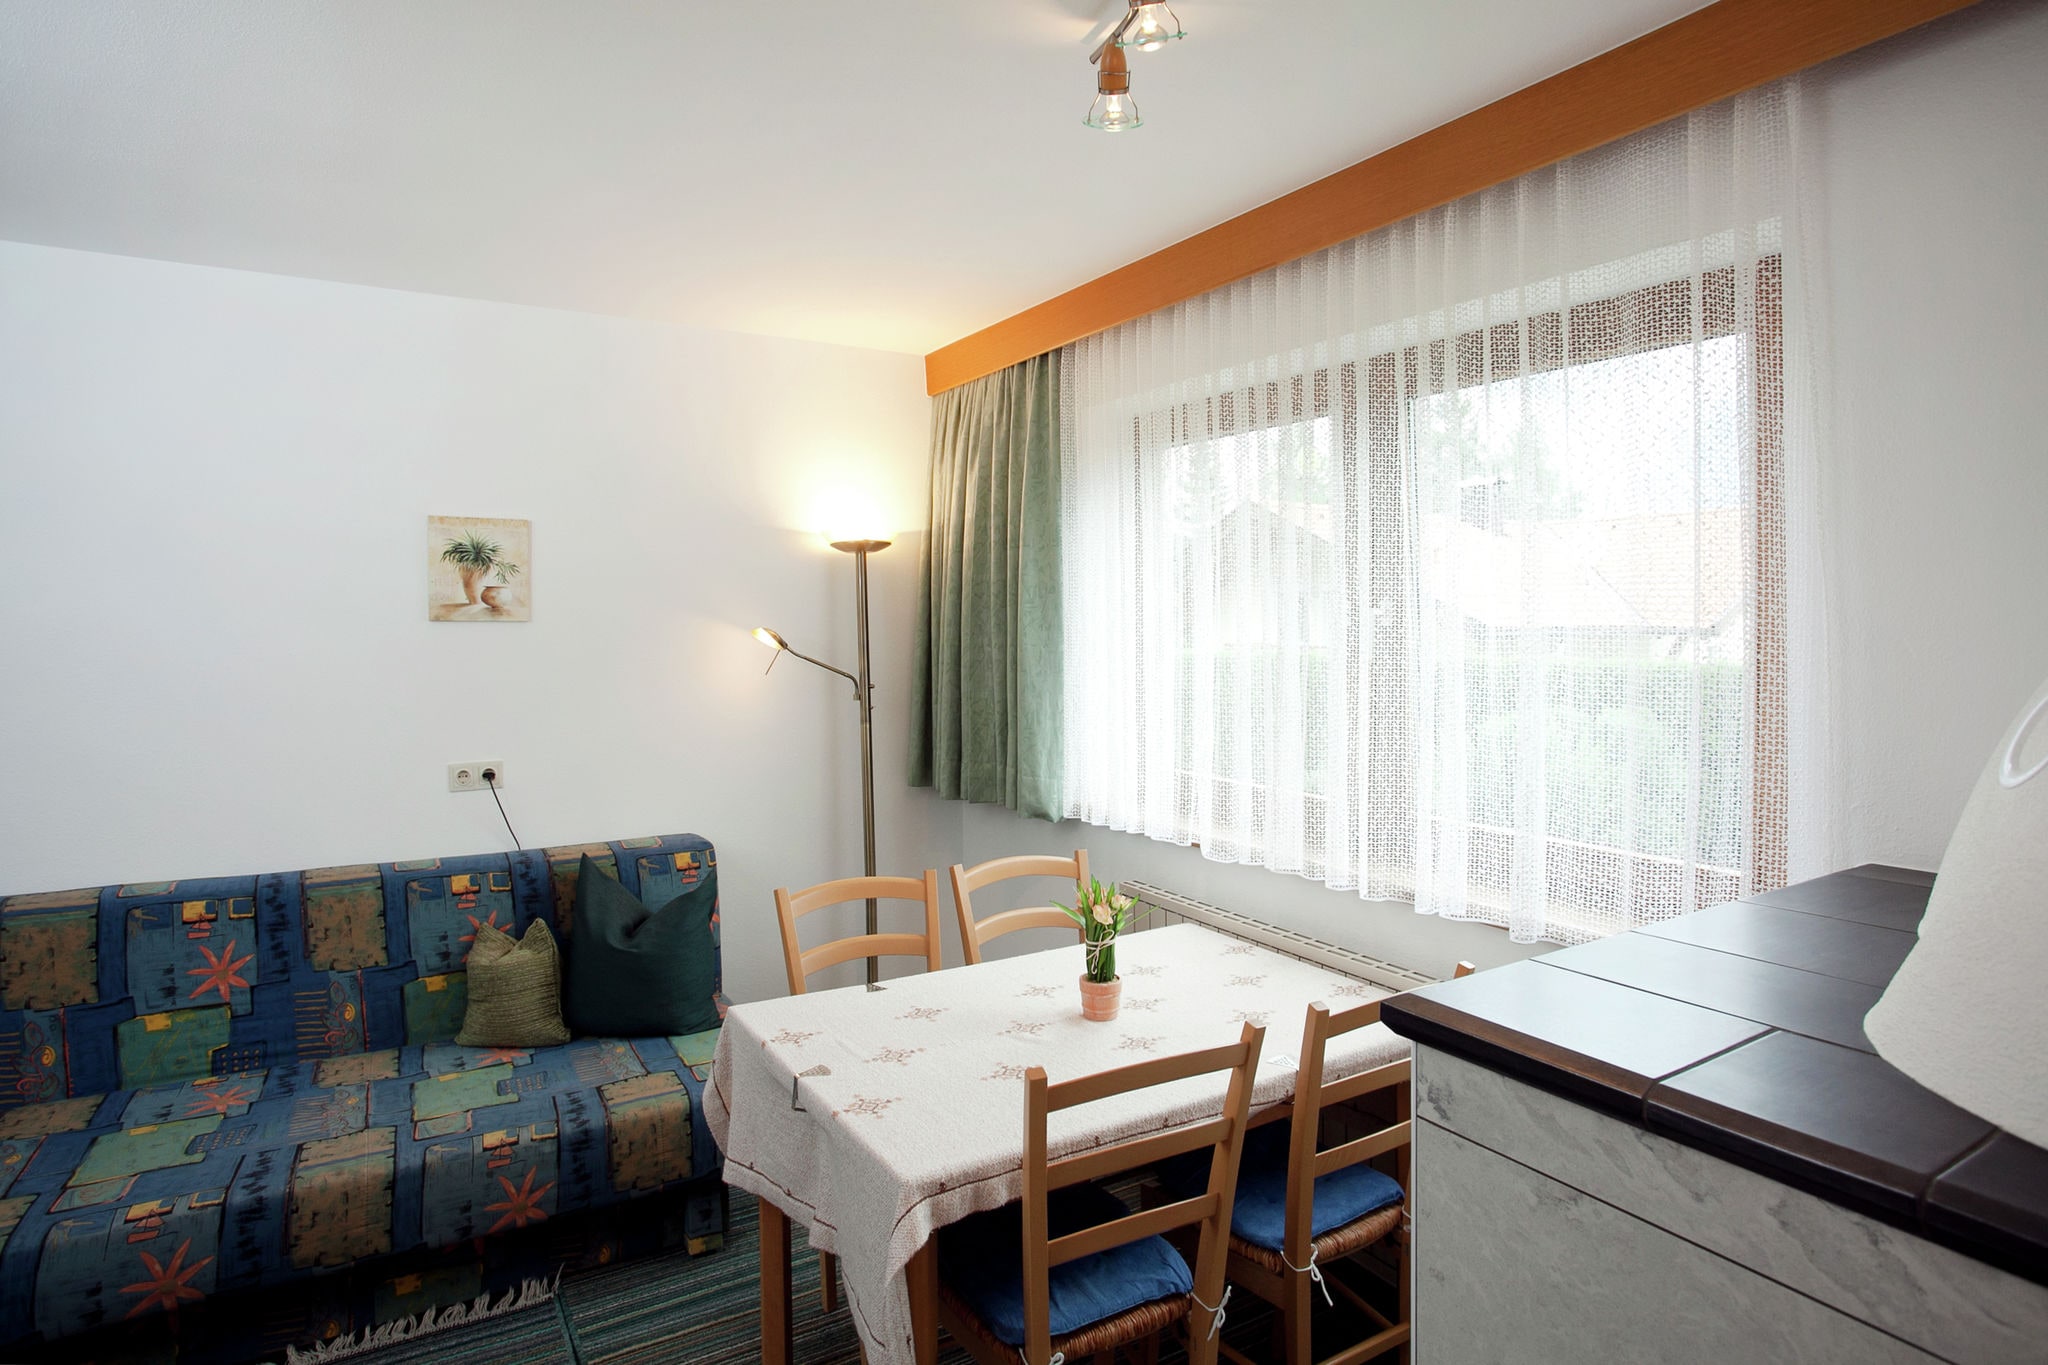 Appartement in de buurt van skigebied in Sautens